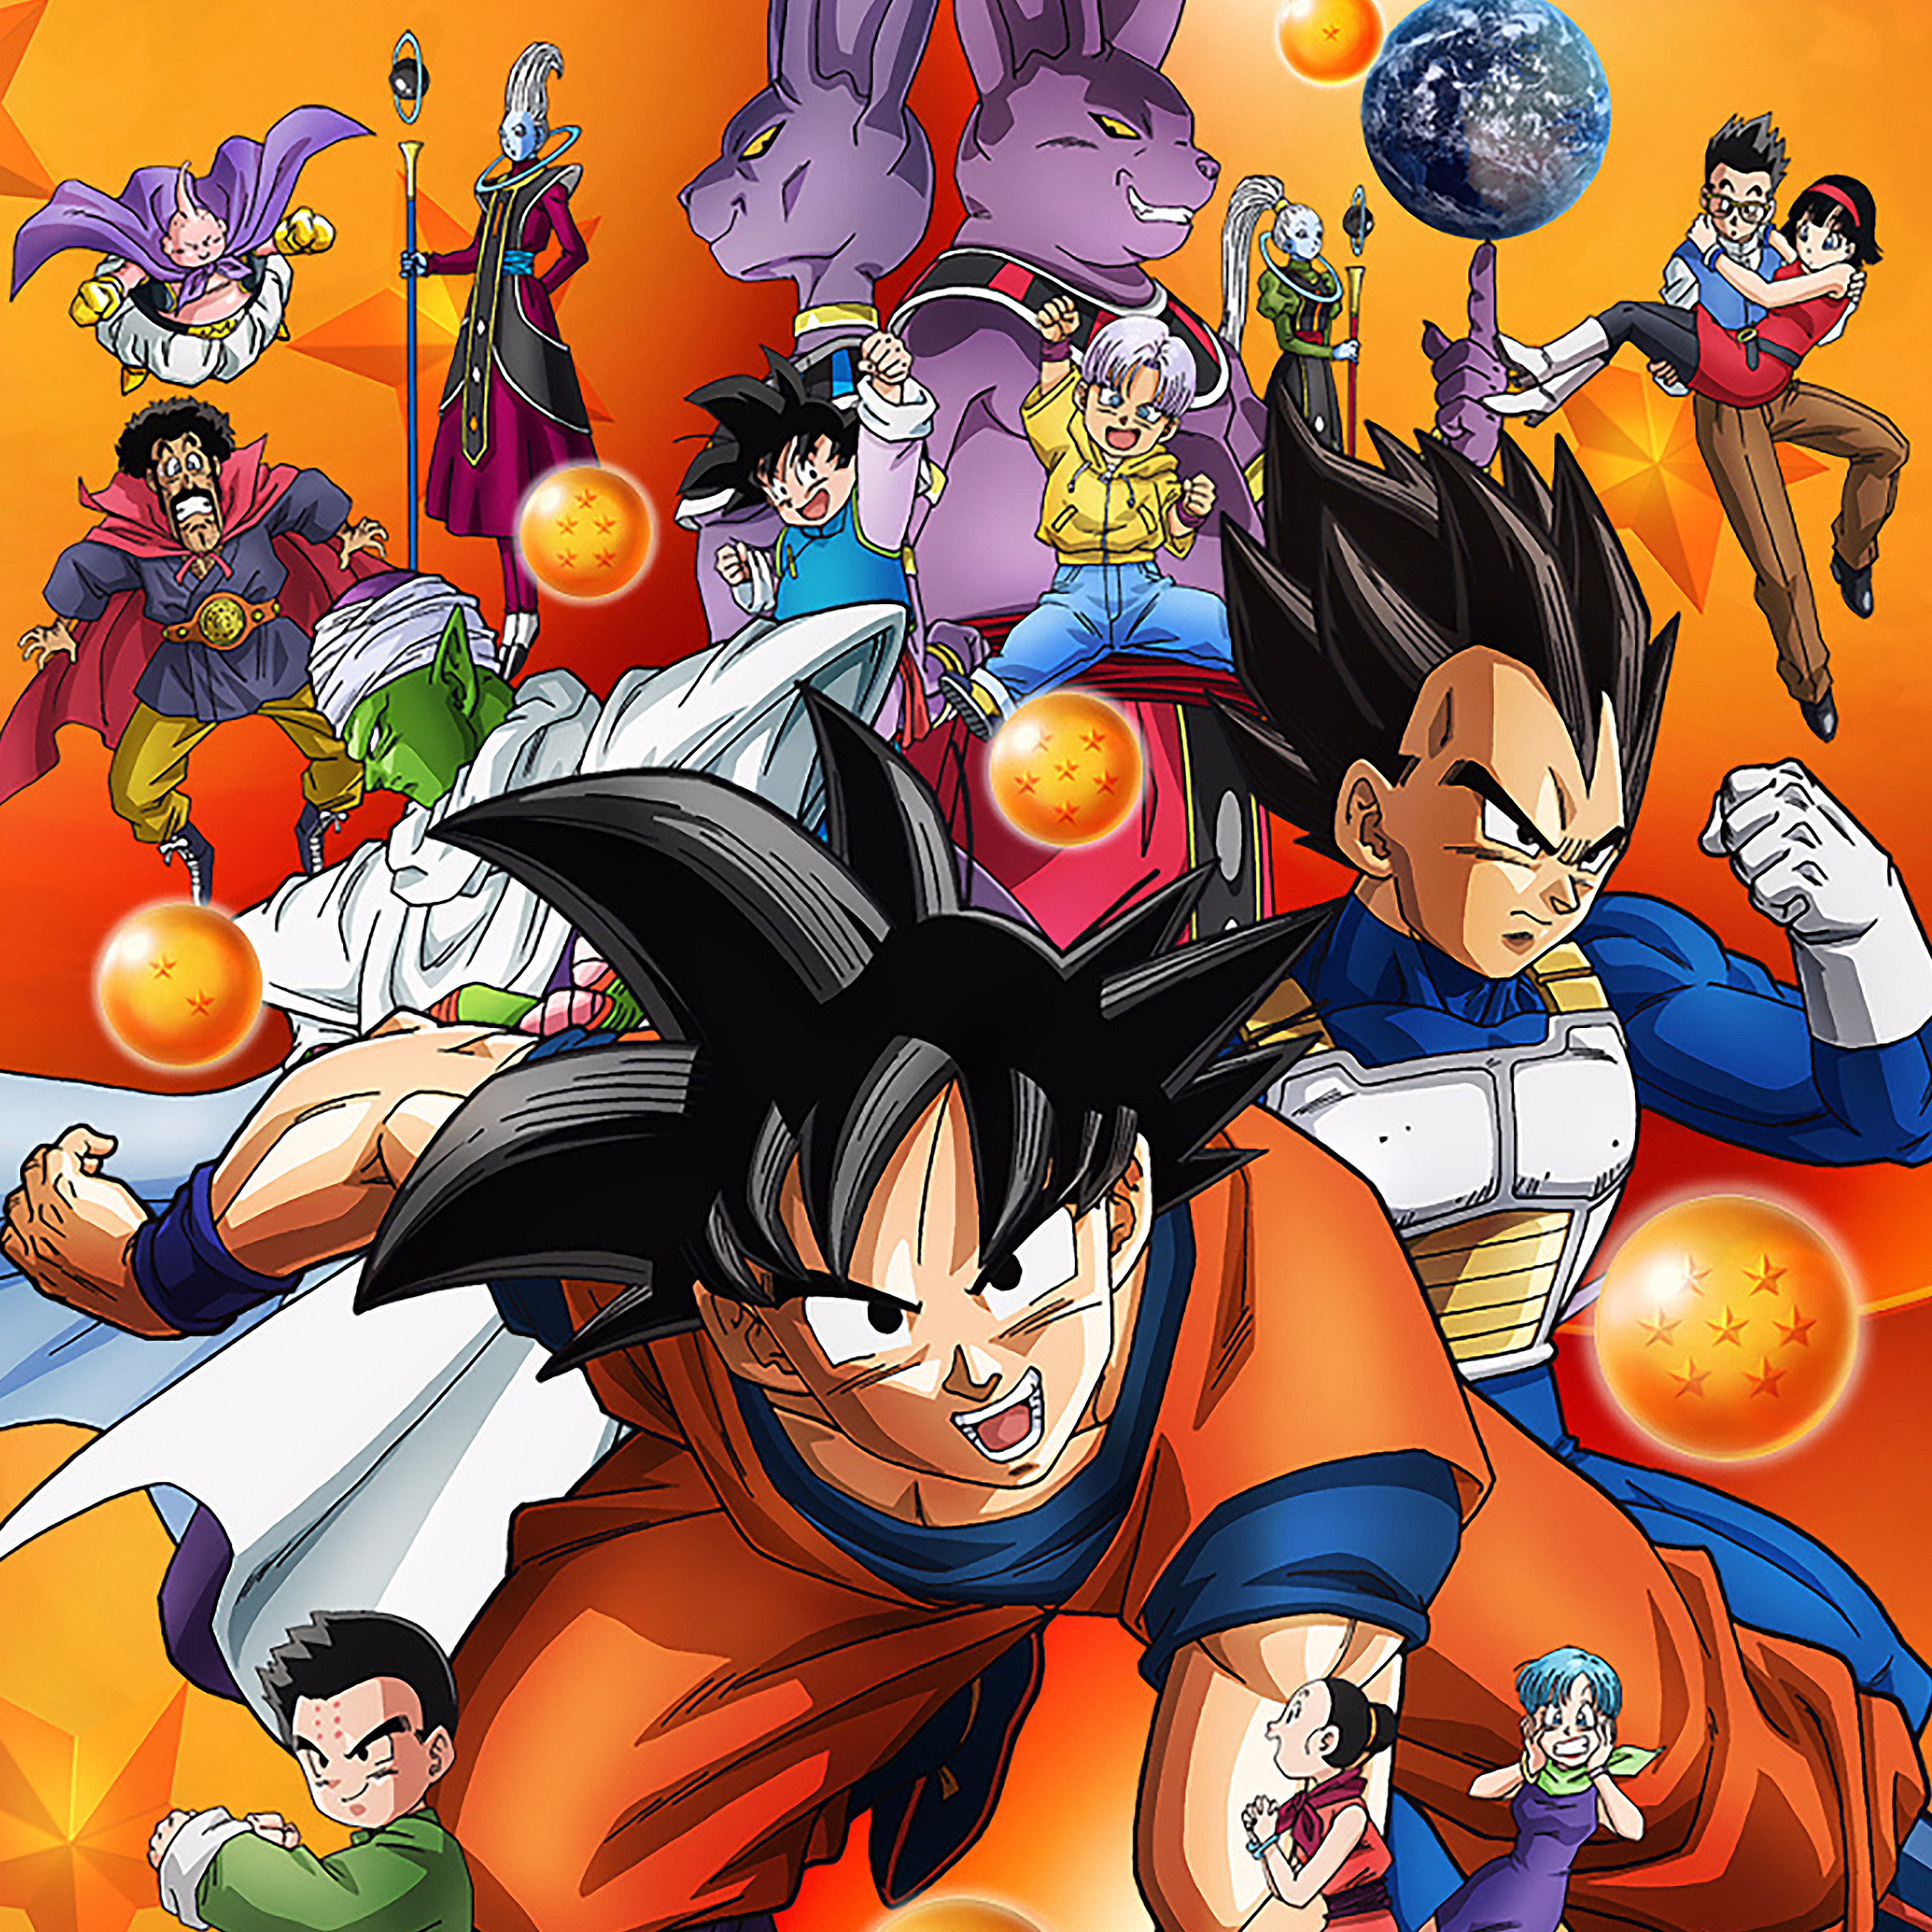 Anime Friends 2018: Wendel Bezerra anuncia retorno das dublagens de Dragon  Ball Super